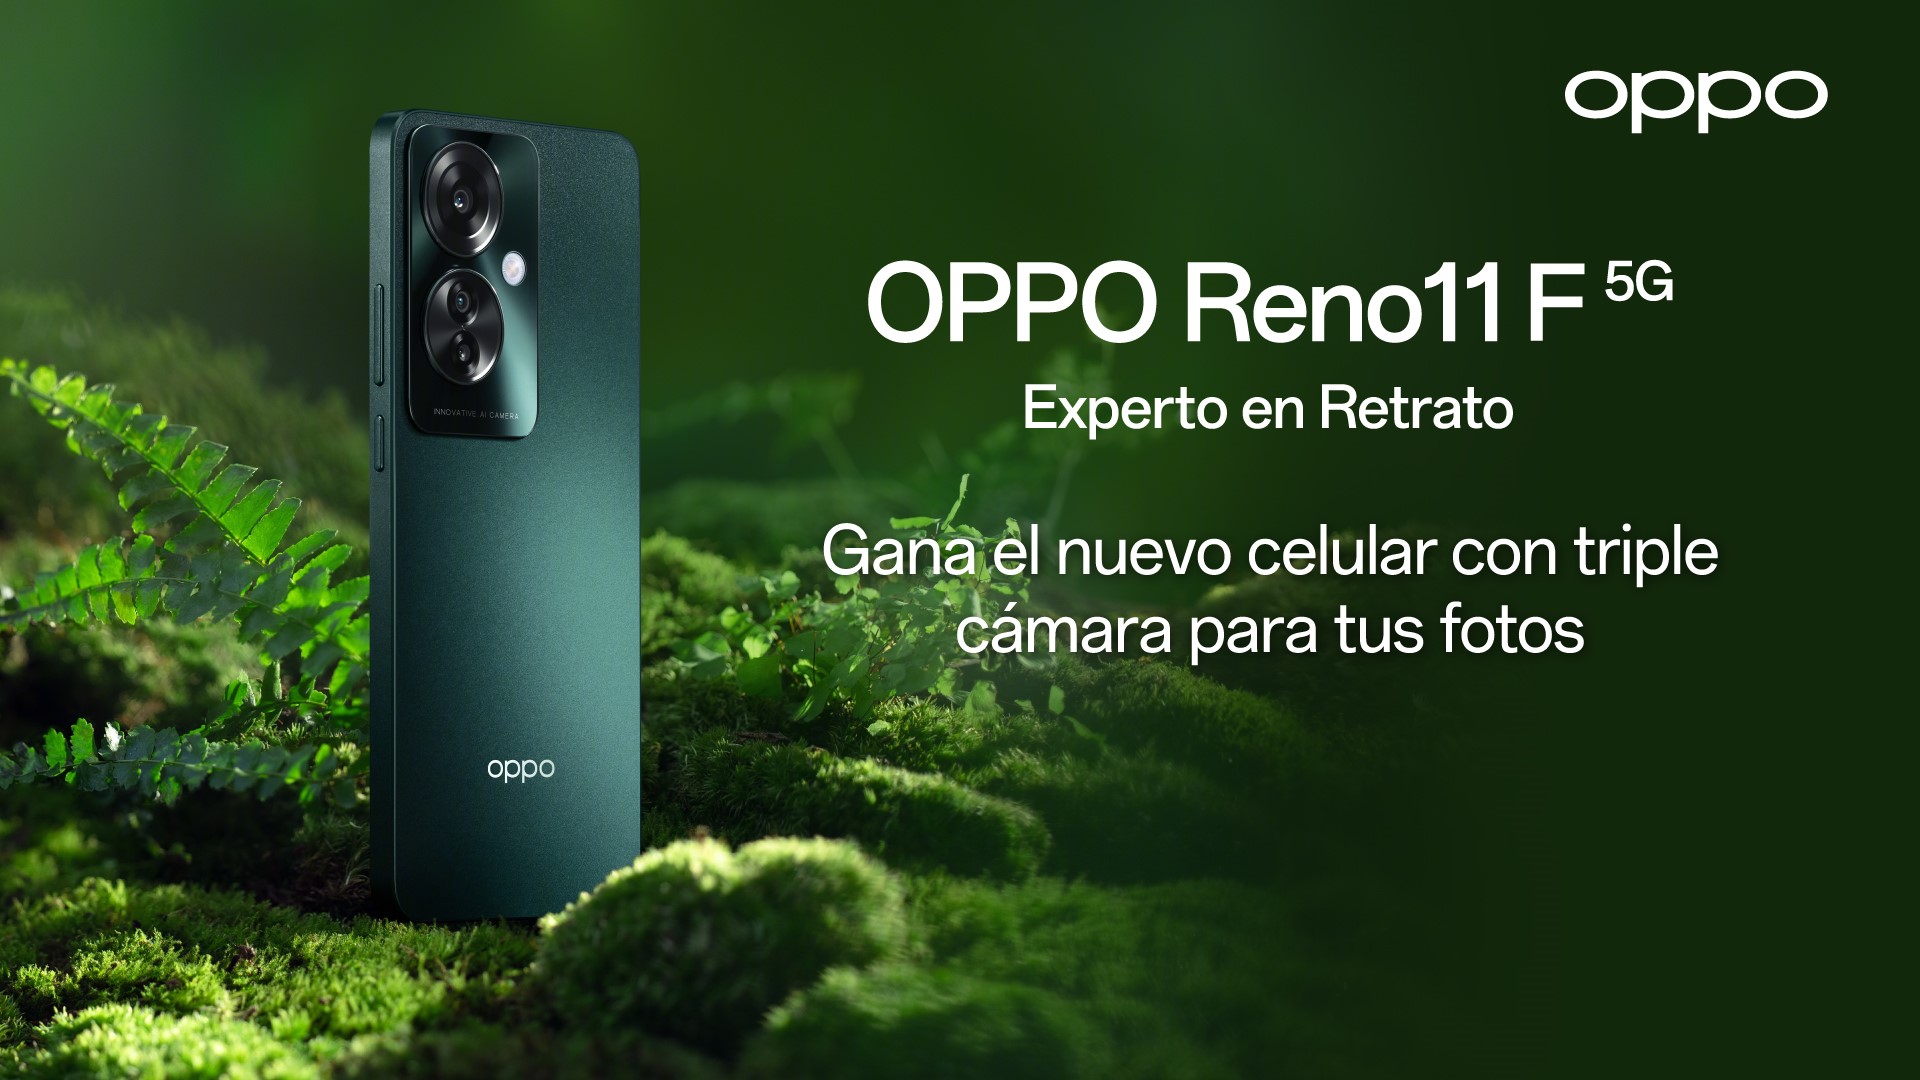 OPPO Colombia lanza el revolucionario OPPO Reno11 F 5G